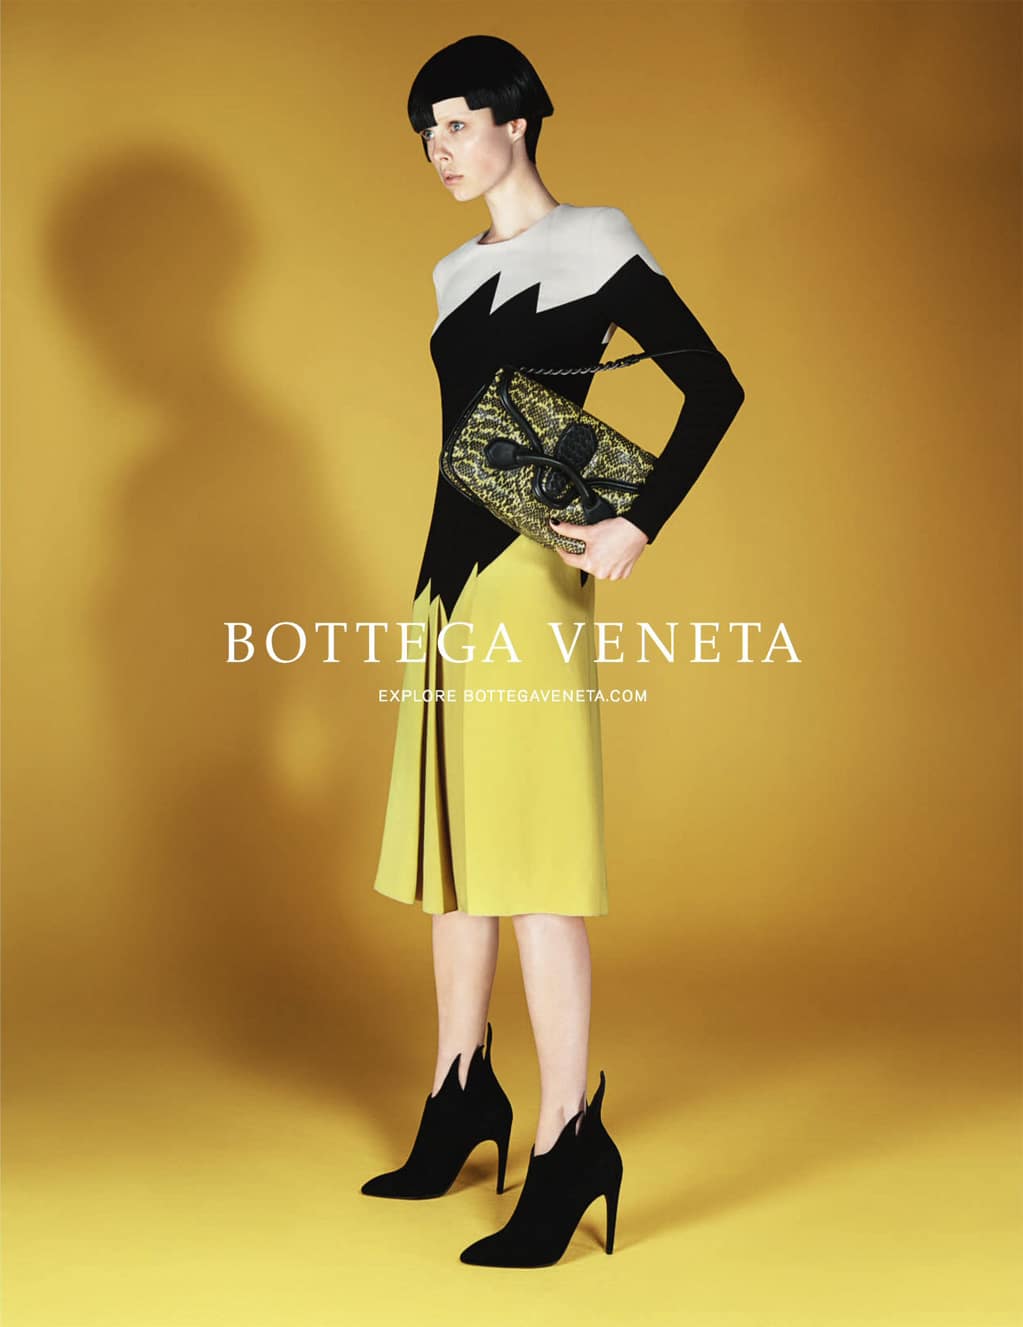 Bottega Veneta Fall Winter 2014 ad campaign